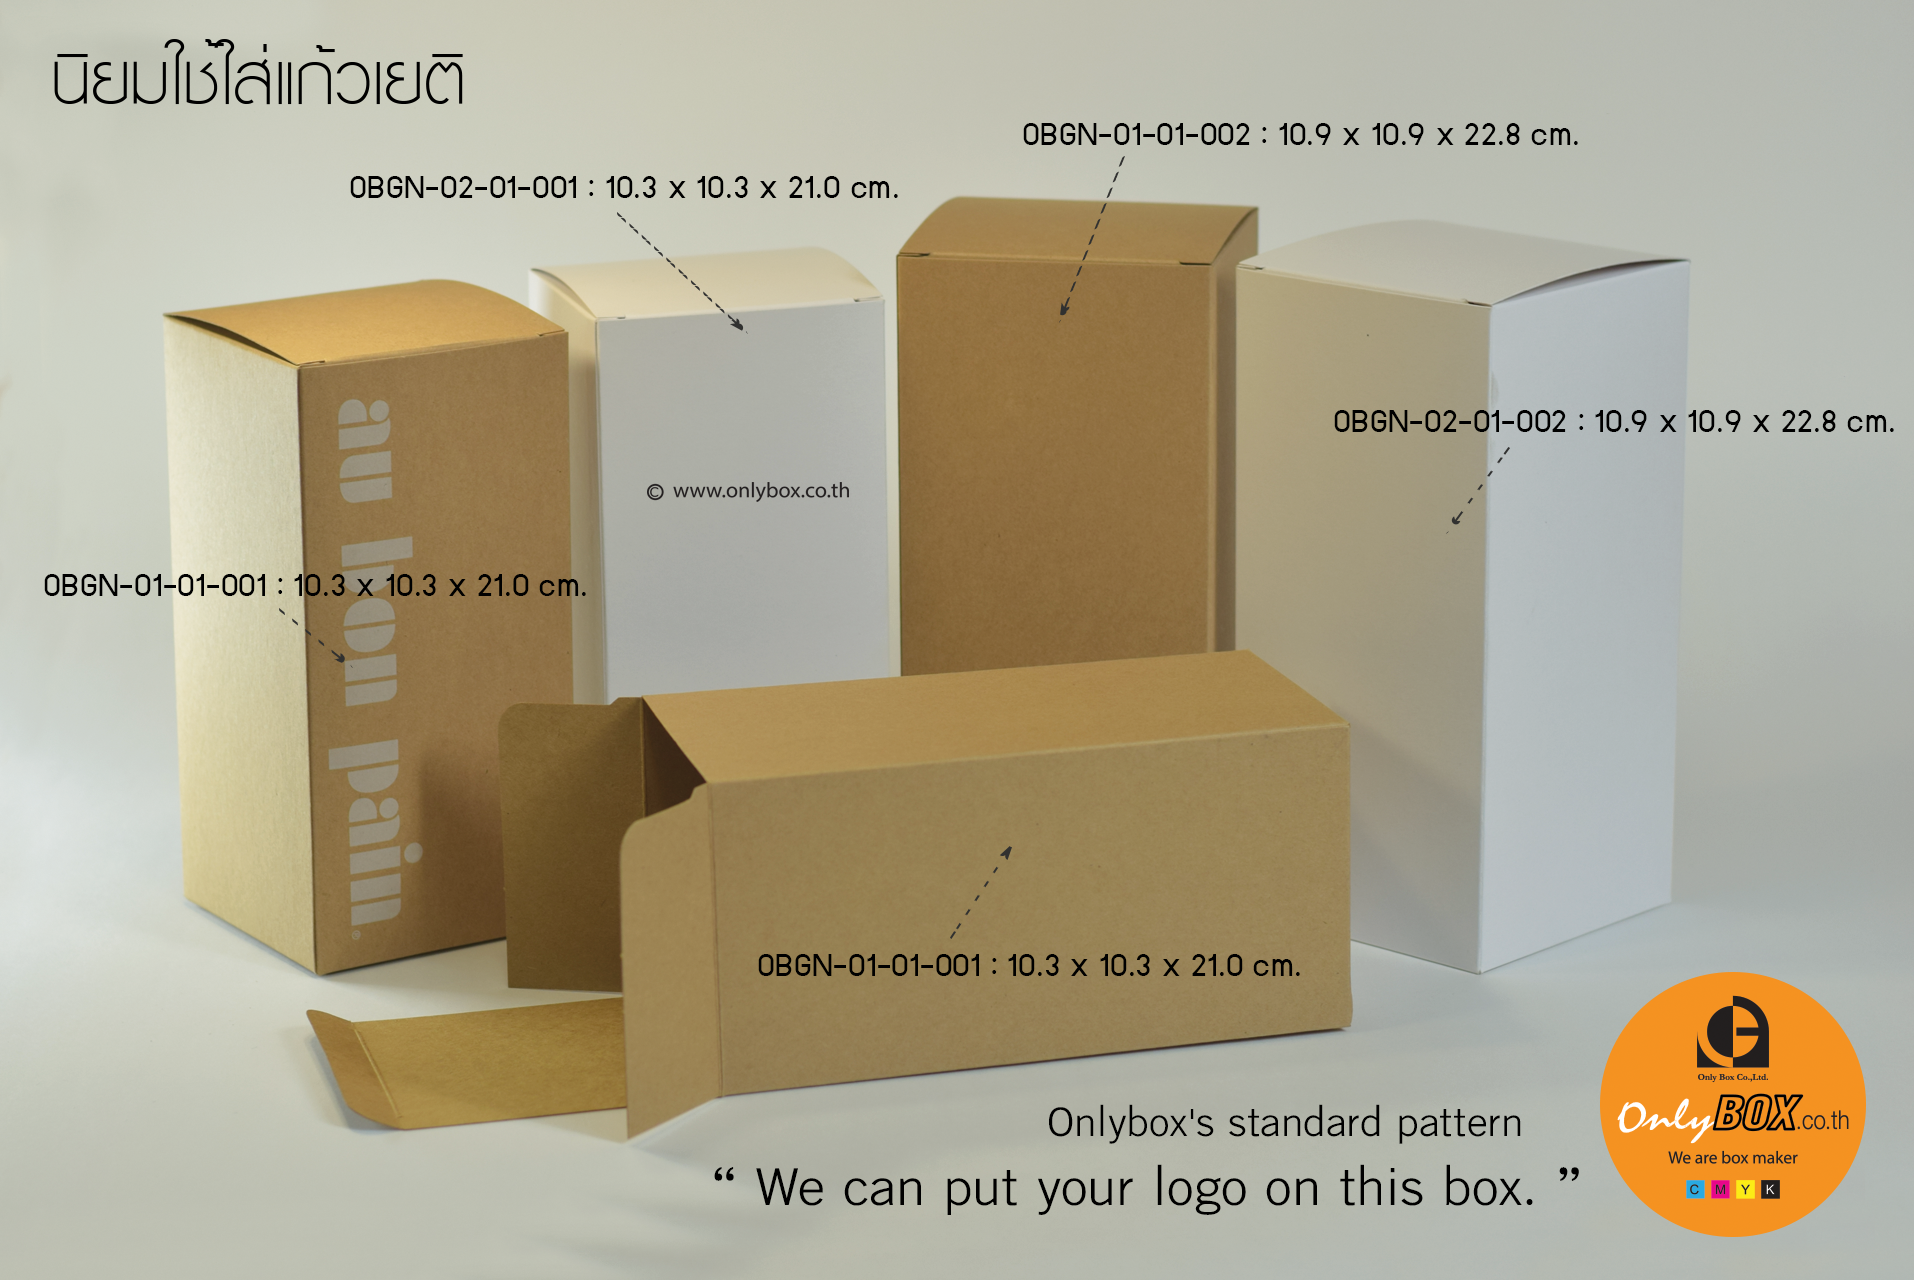 กล่องนี้เหมาะสำหรับใส่แก้วเยติ สามารถพิมพ์โลโก้ หรือ ลวดลายอื่นๆ ของลูกค้าลงไปบนกล่องมาตรฐานของ Onlybox ได้เลย